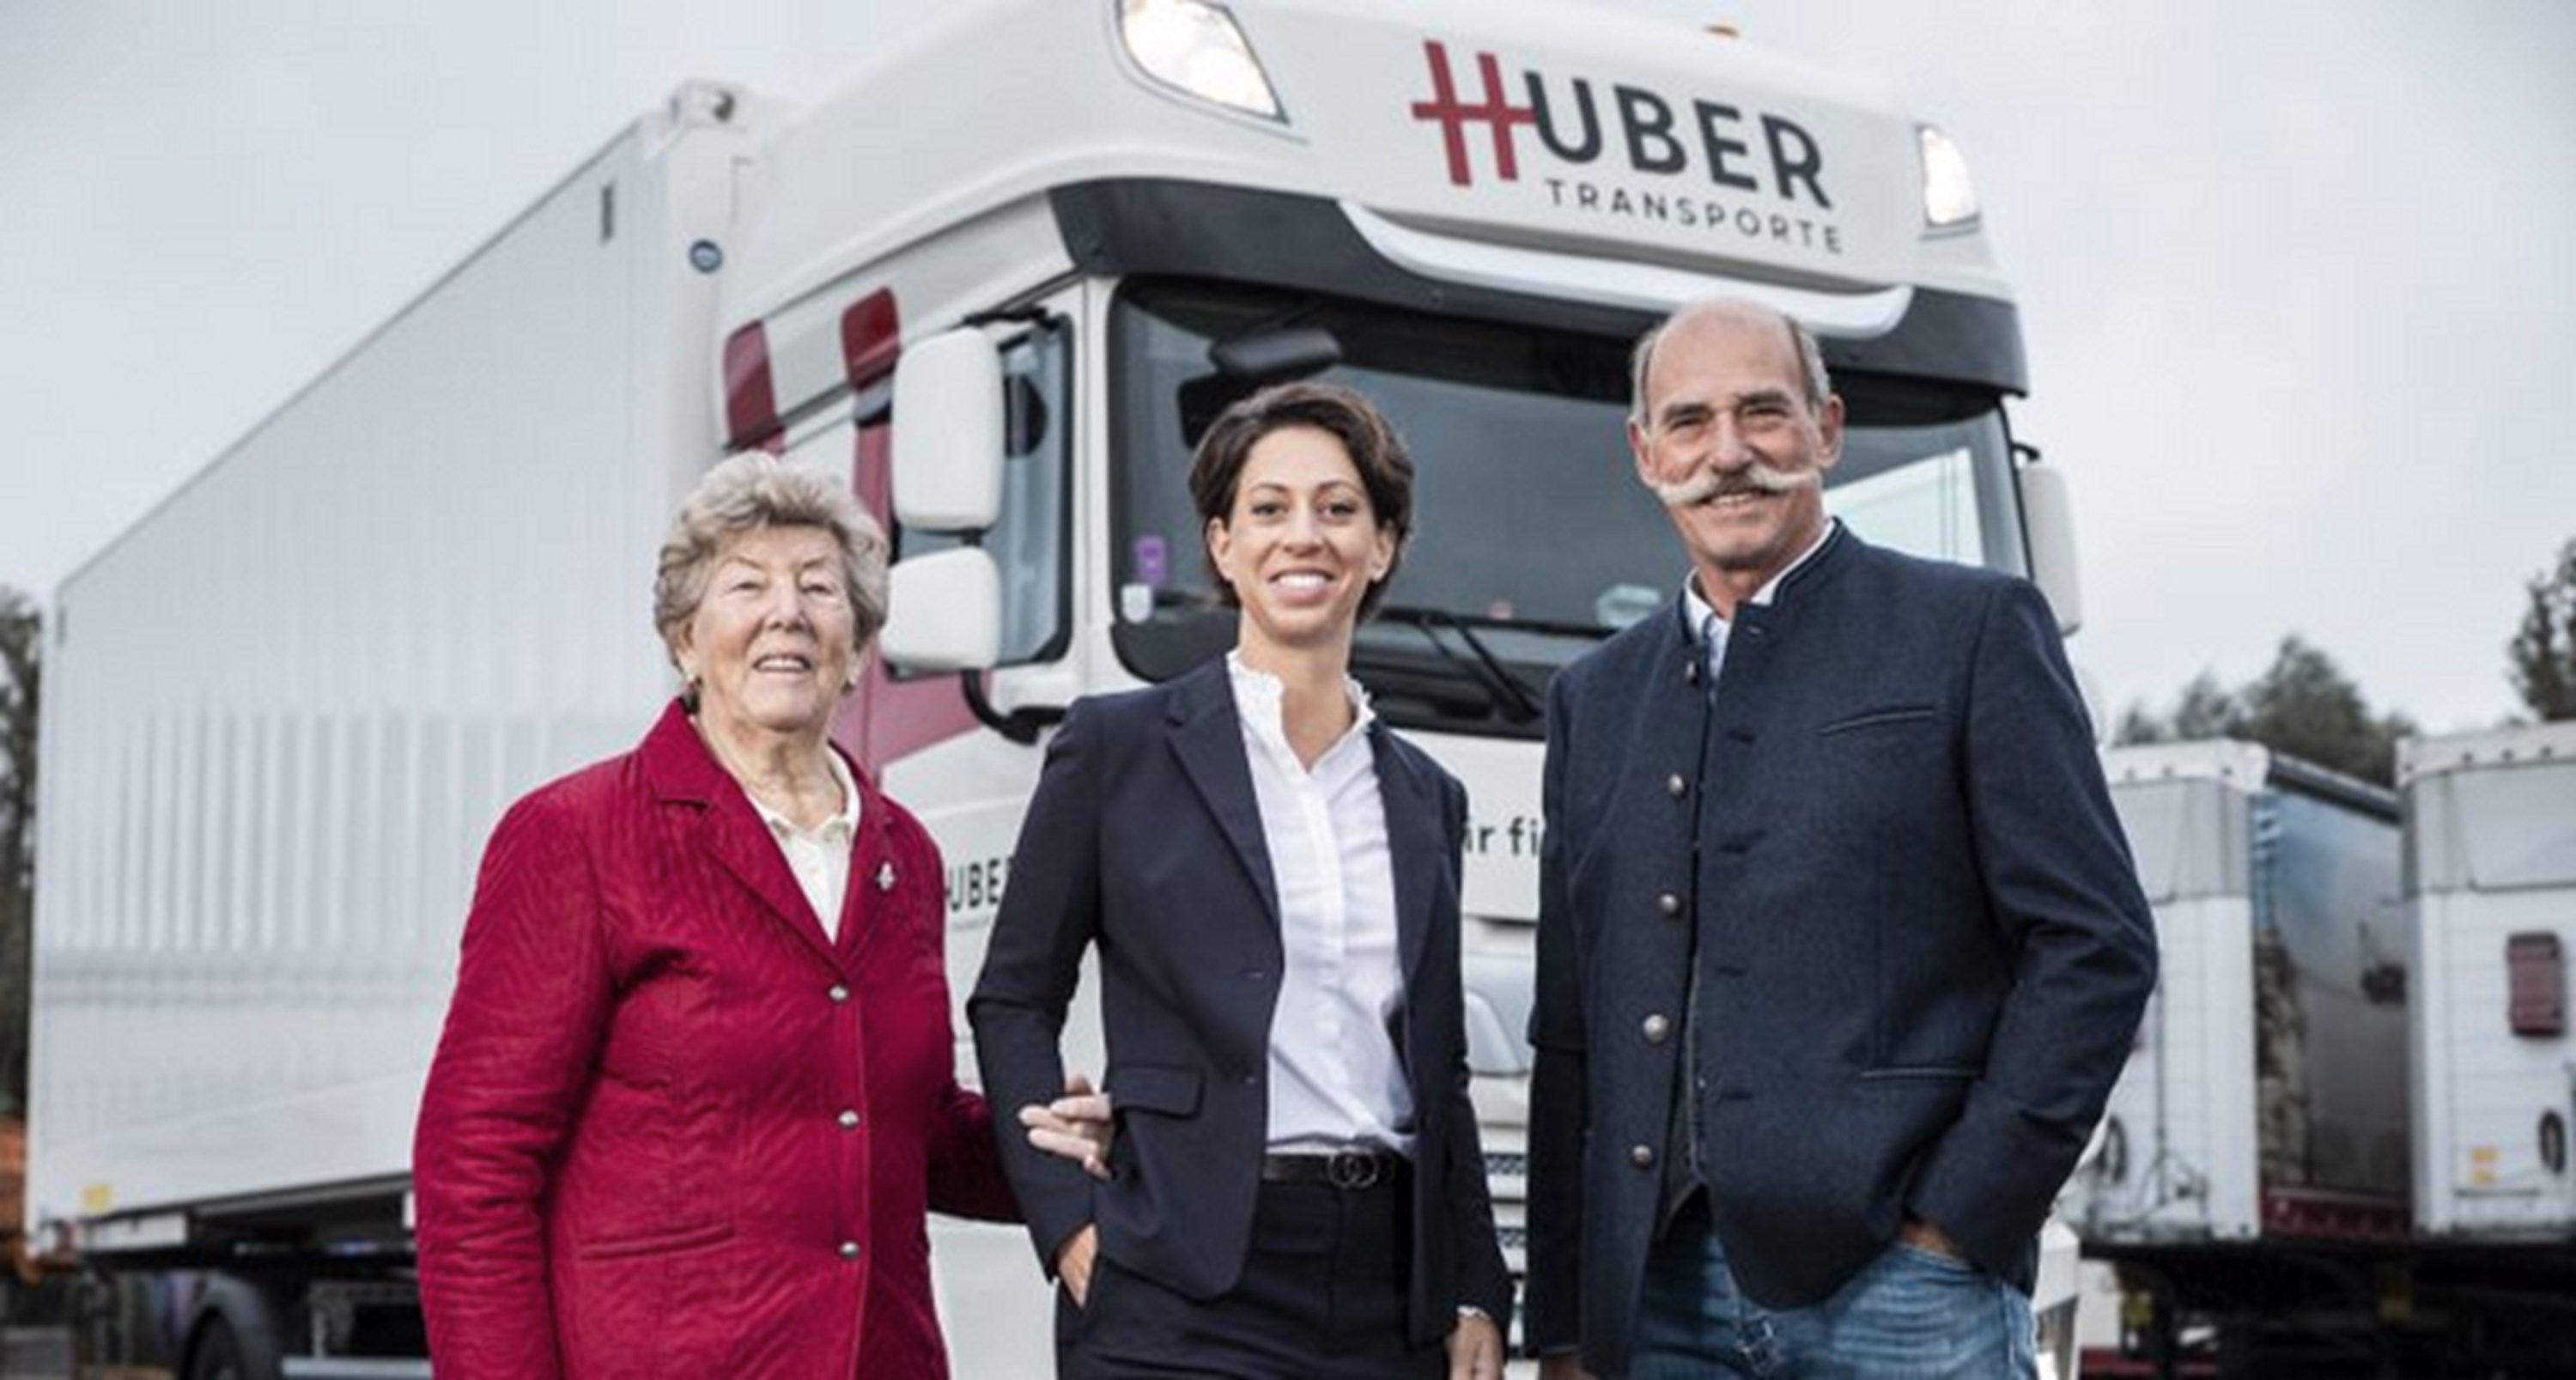 Sabrina Huber übernimmt das Familienunternehmen Huber Transporte